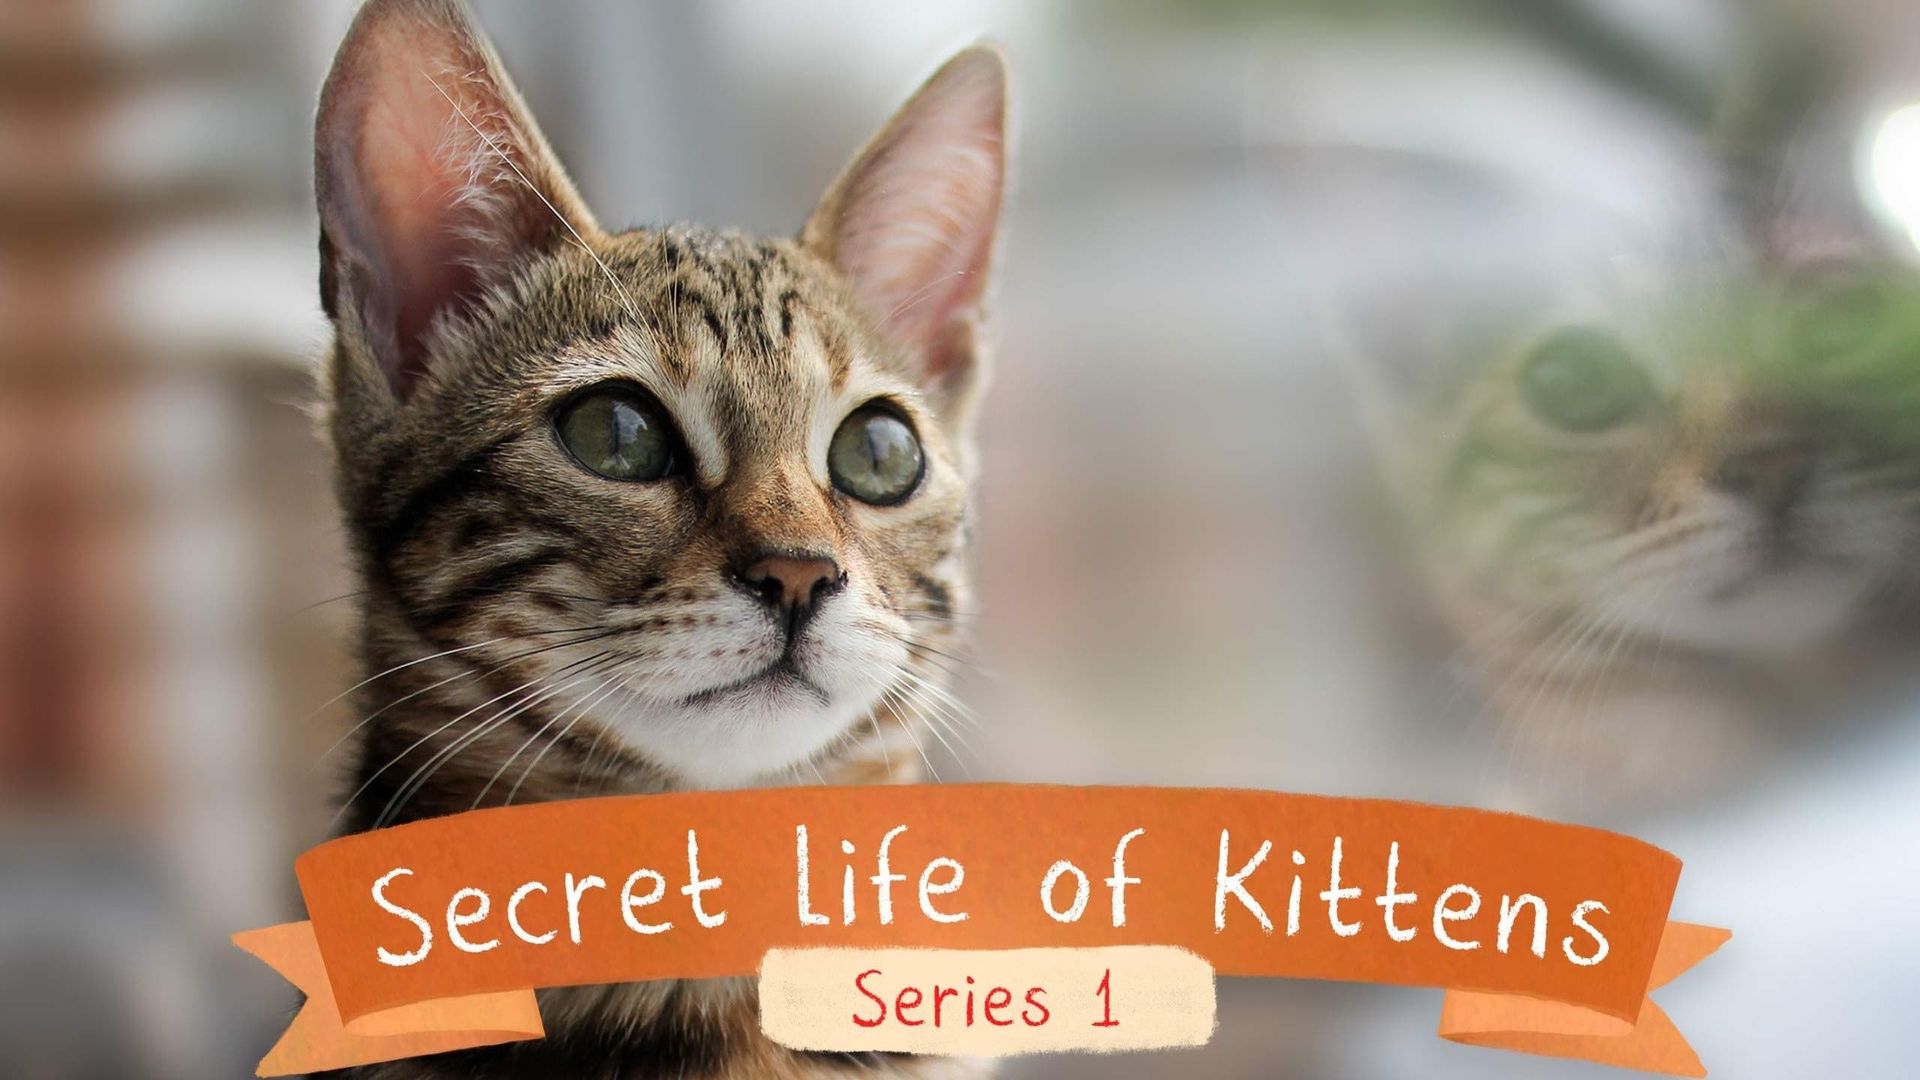 The Secret Life of Kittens background